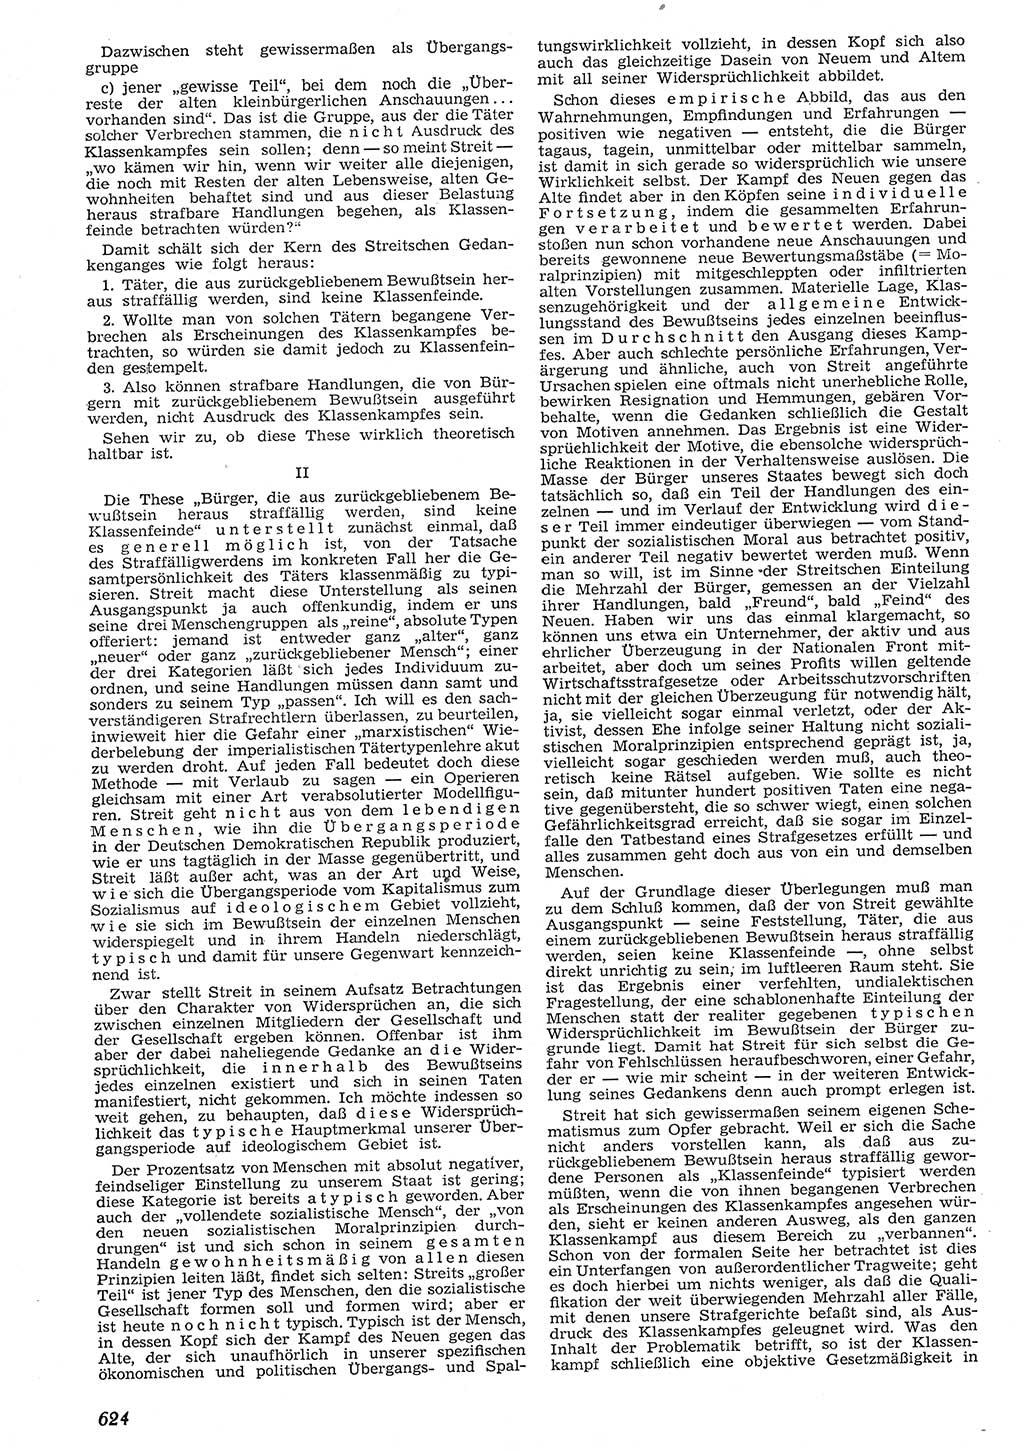 Neue Justiz (NJ), Zeitschrift für Recht und Rechtswissenschaft [Deutsche Demokratische Republik (DDR)], 10. Jahrgang 1956, Seite 624 (NJ DDR 1956, S. 624)